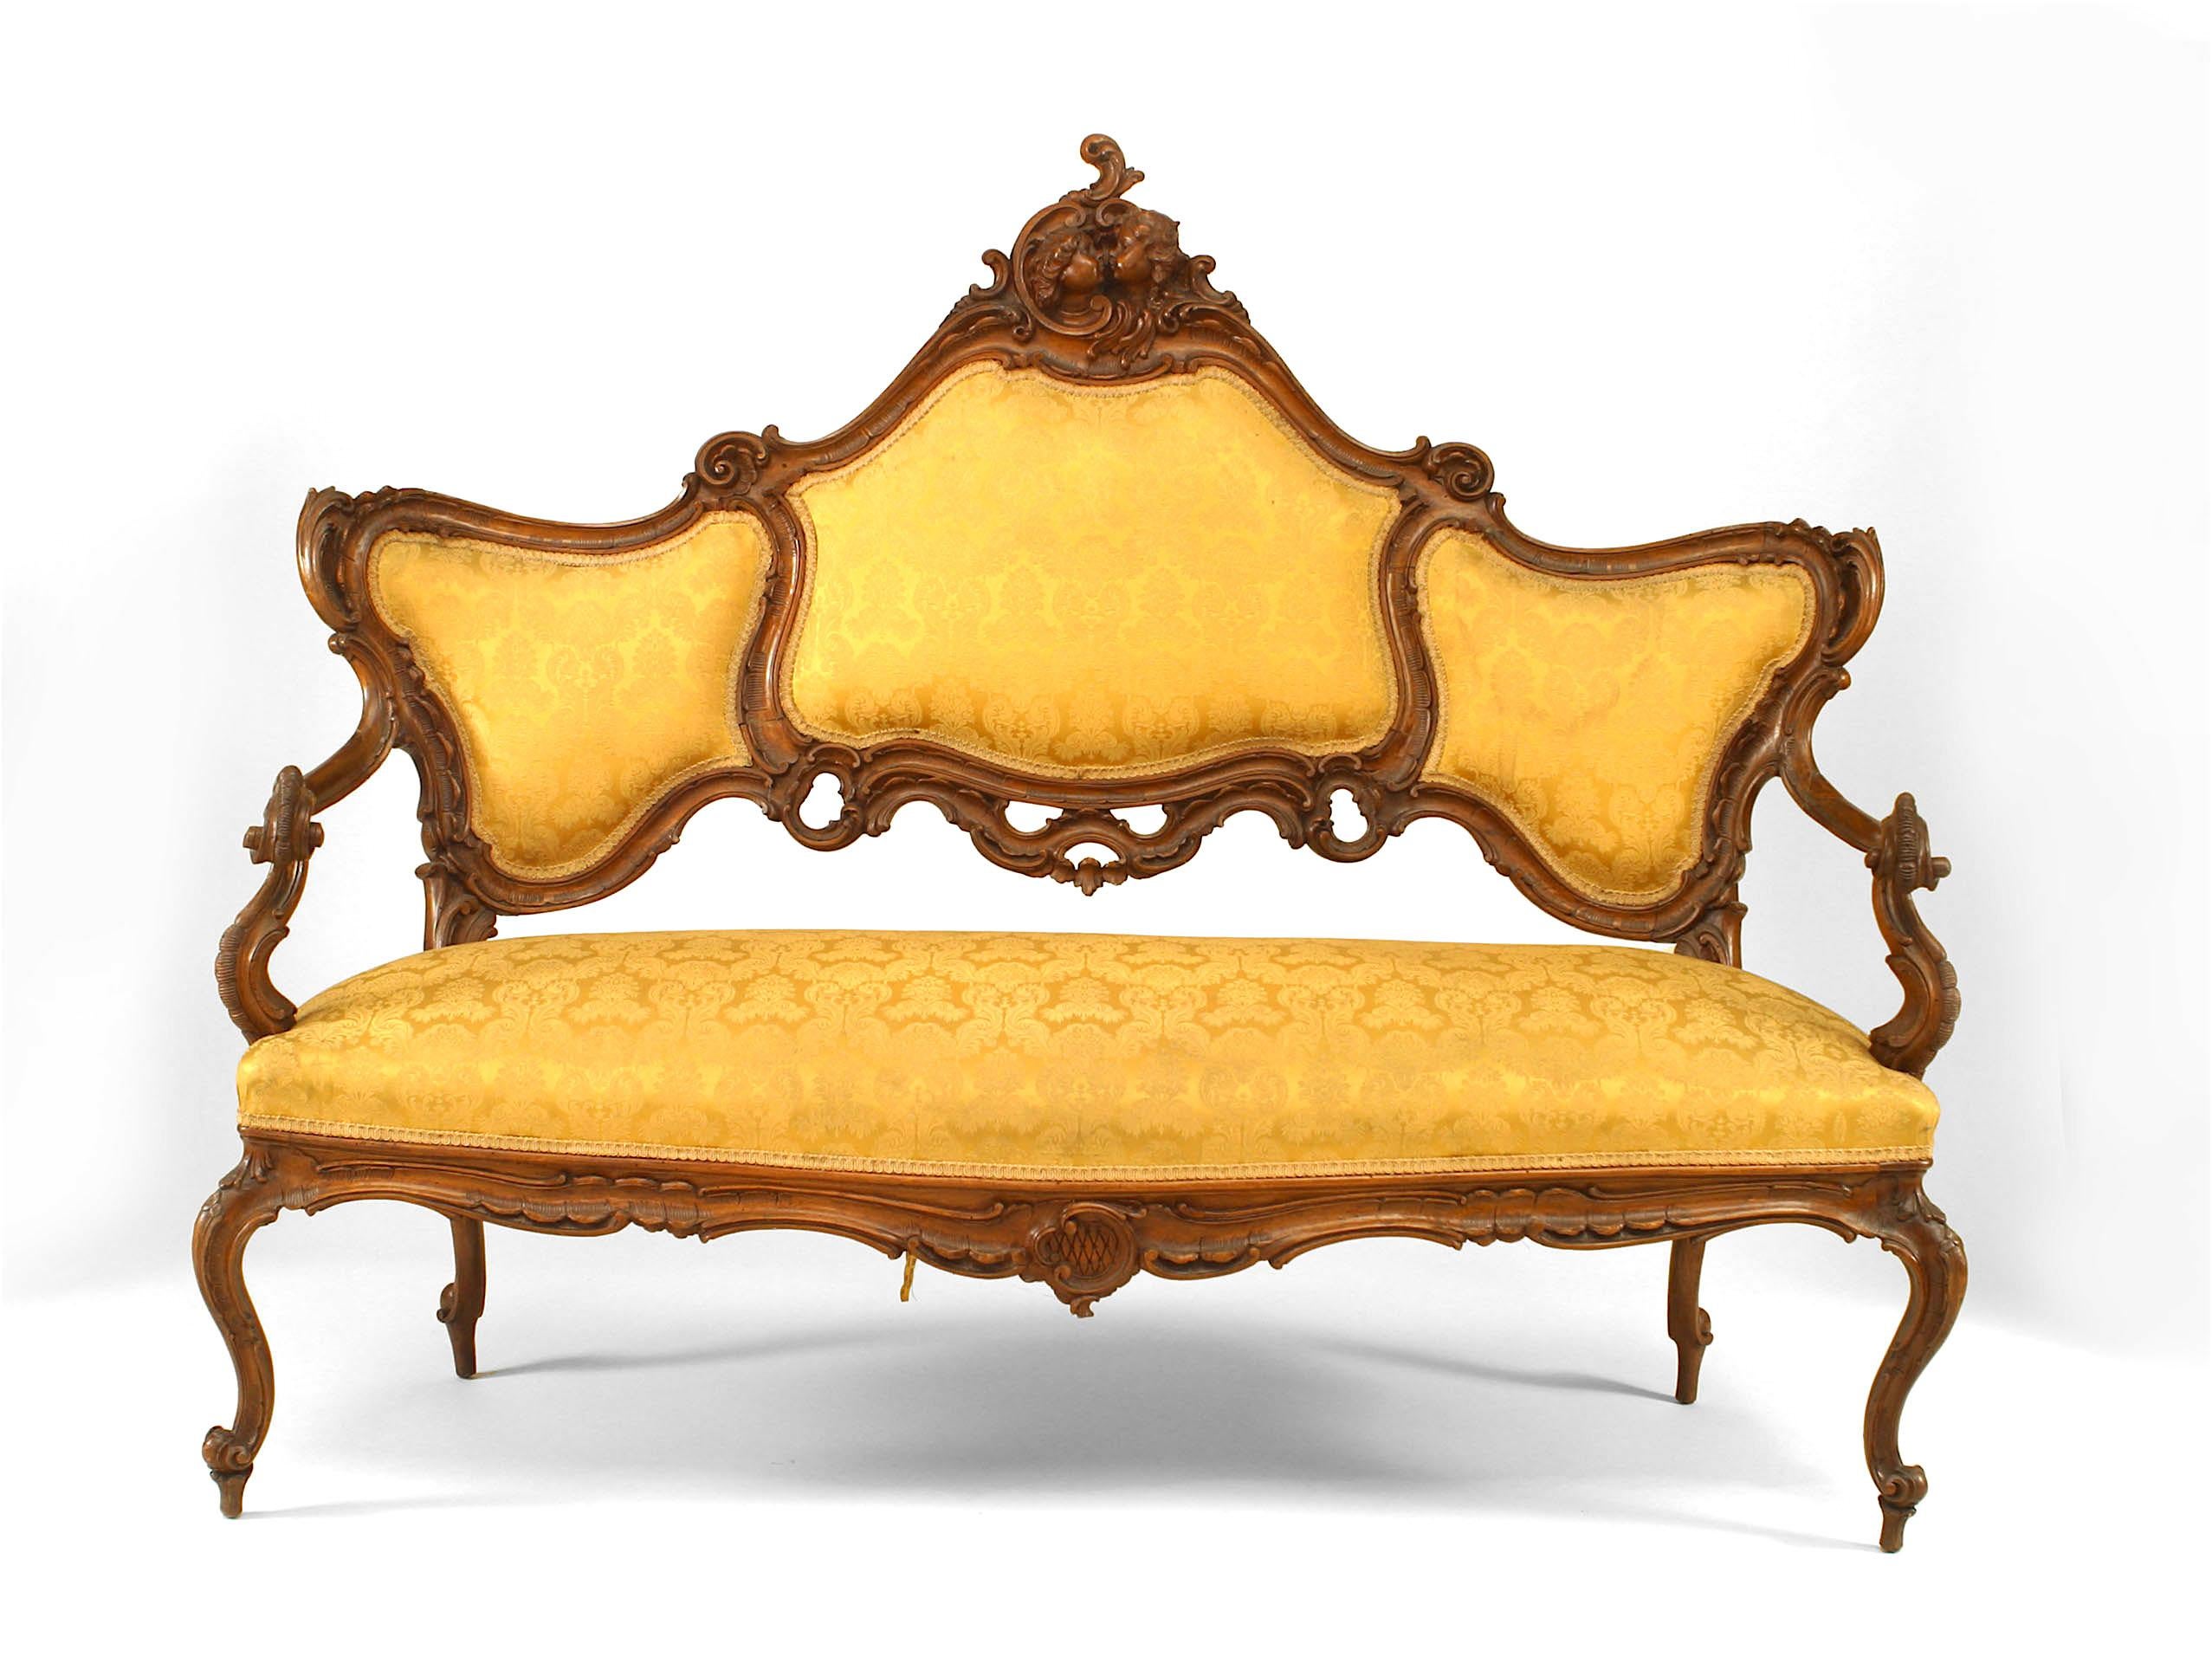 Ensemble de 6 fauteuils de salon de style vénitien (19ème siècle) en noyer avec têtes de cupidon sculptées et tapisserie dorée. (3 chaises latérales, 2 fauteuils, 1 causeuse)
